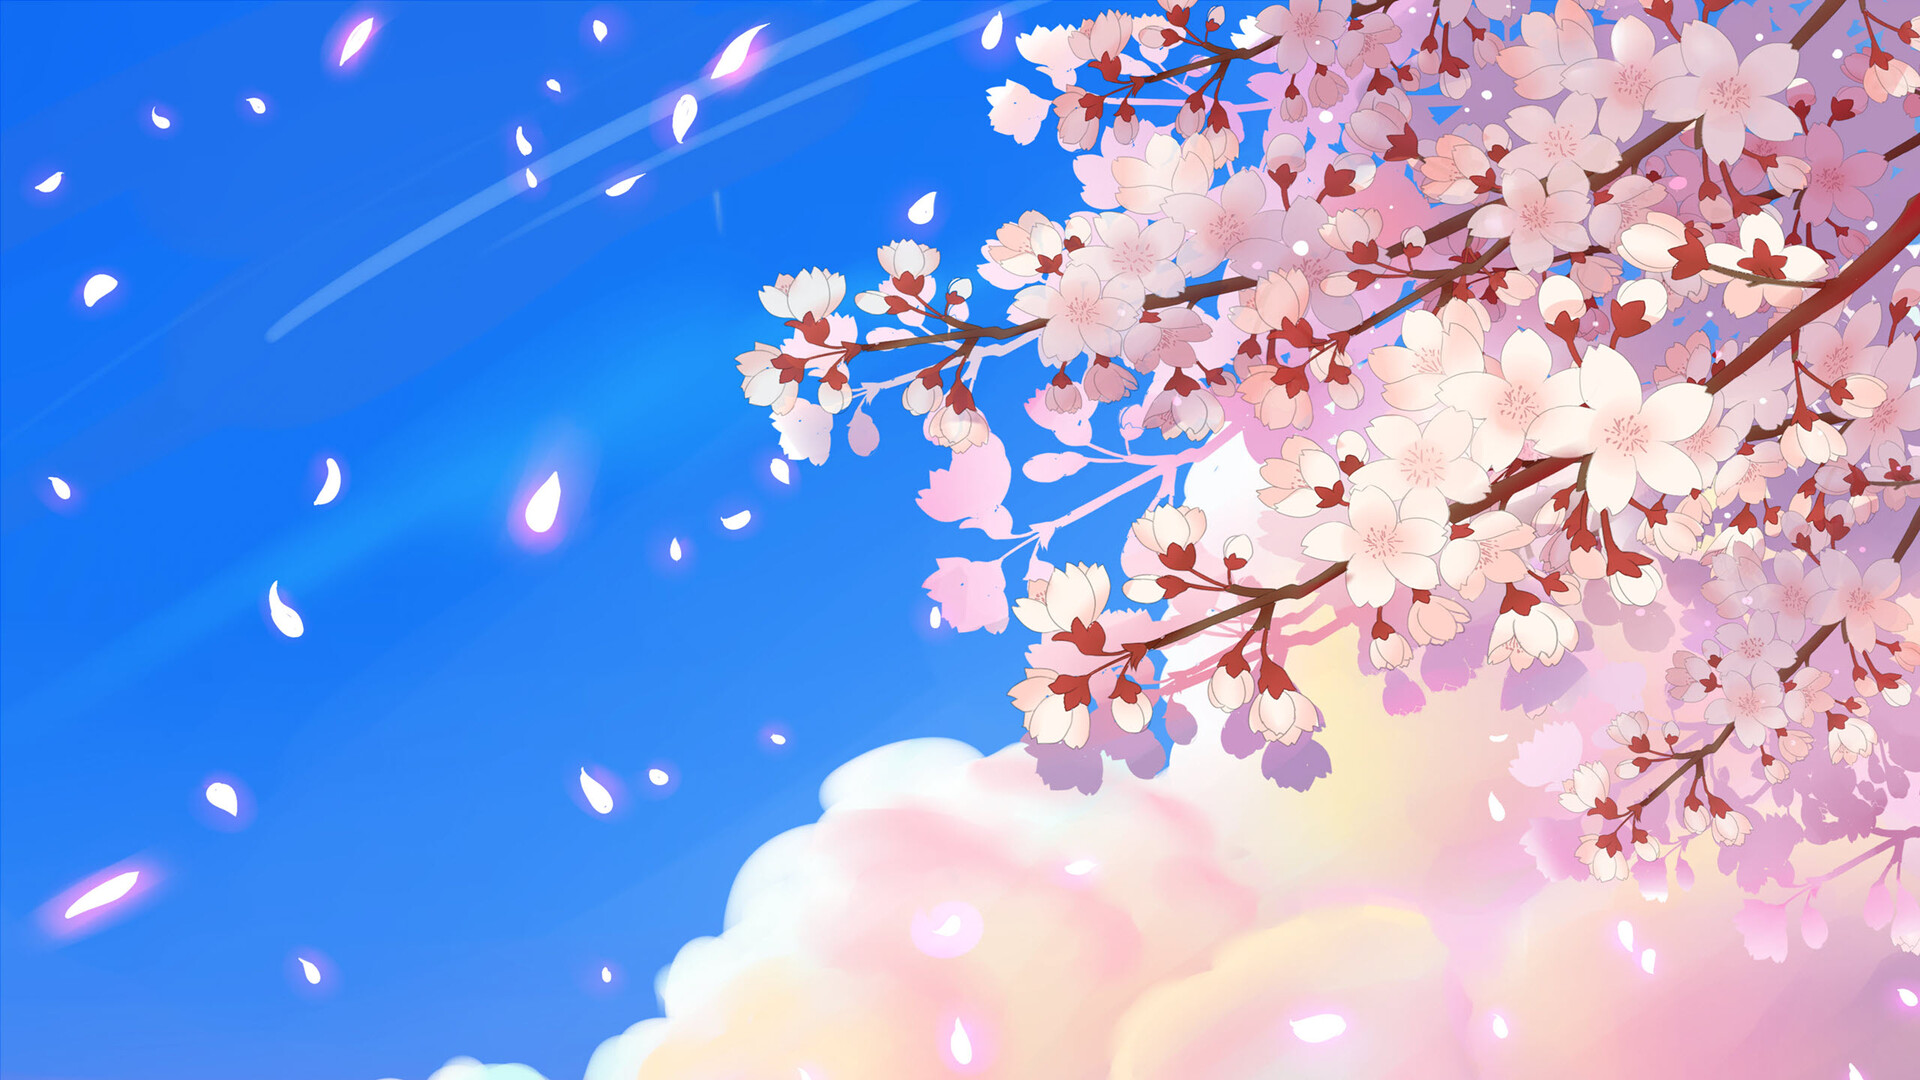 Với cuộc sống bận rộn, bạn đang tìm kiếm niềm vui trong nghệ thuật và thiết kế trang trí? Hãy xem Cherry Blossoms Picture hoặc Cherry Blossom Art để cảm nhận vẻ đẹp của hoa anh đào trong những bức tranh tuyệt đẹp và độc đáo.